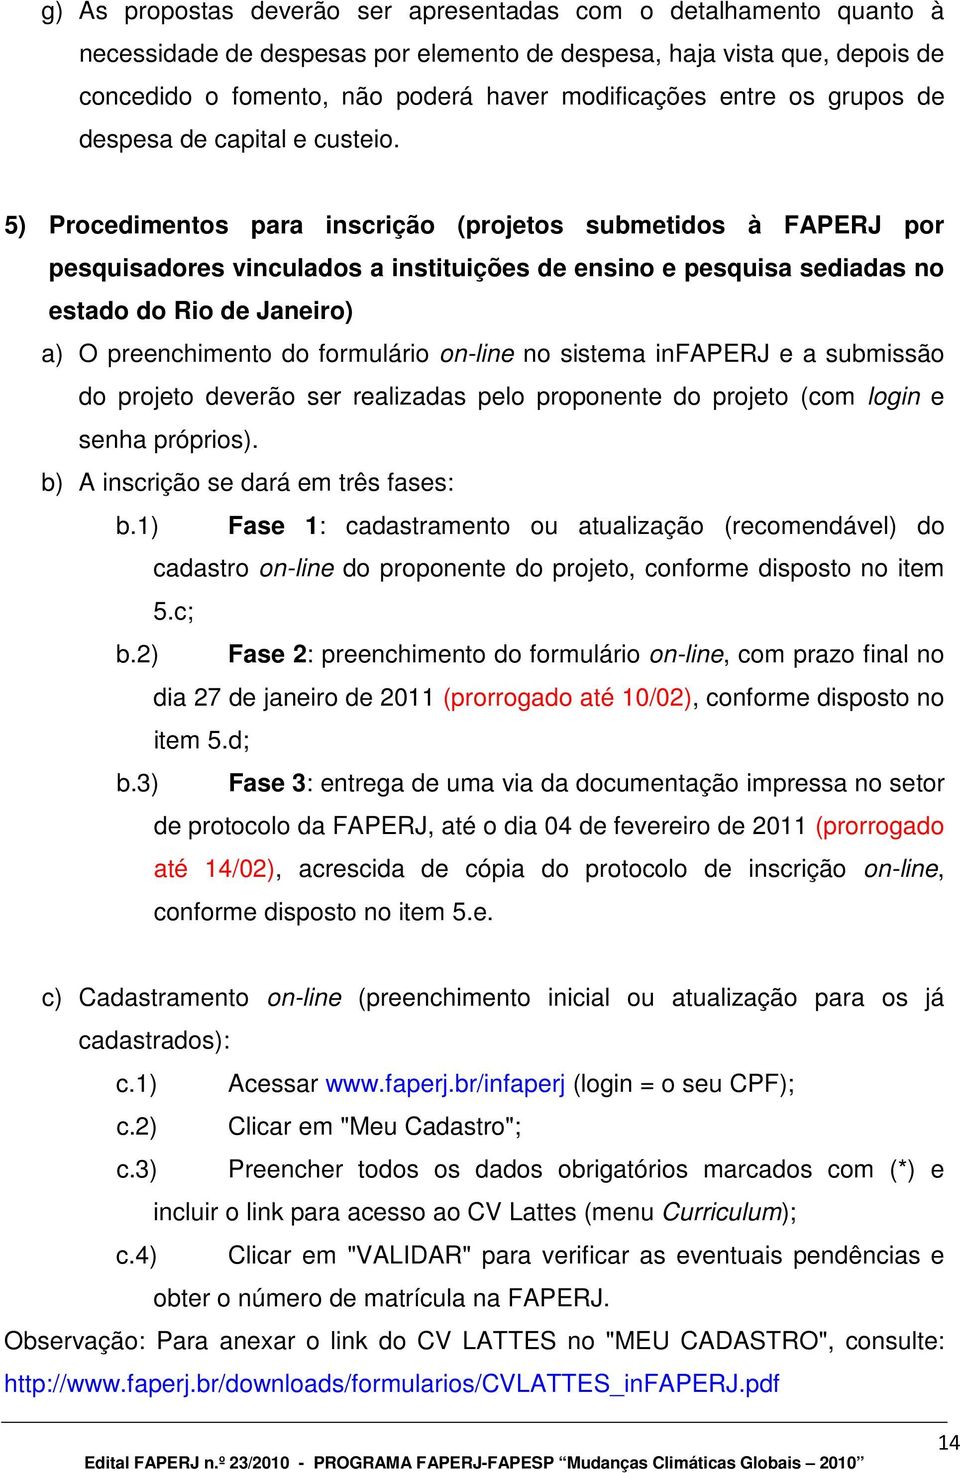 5) Procedimentos para inscrição (projetos submetidos à FAPERJ por pesquisadores vinculados a instituições de ensino e pesquisa sediadas no estado do Rio de Janeiro) a) O preenchimento do formulário